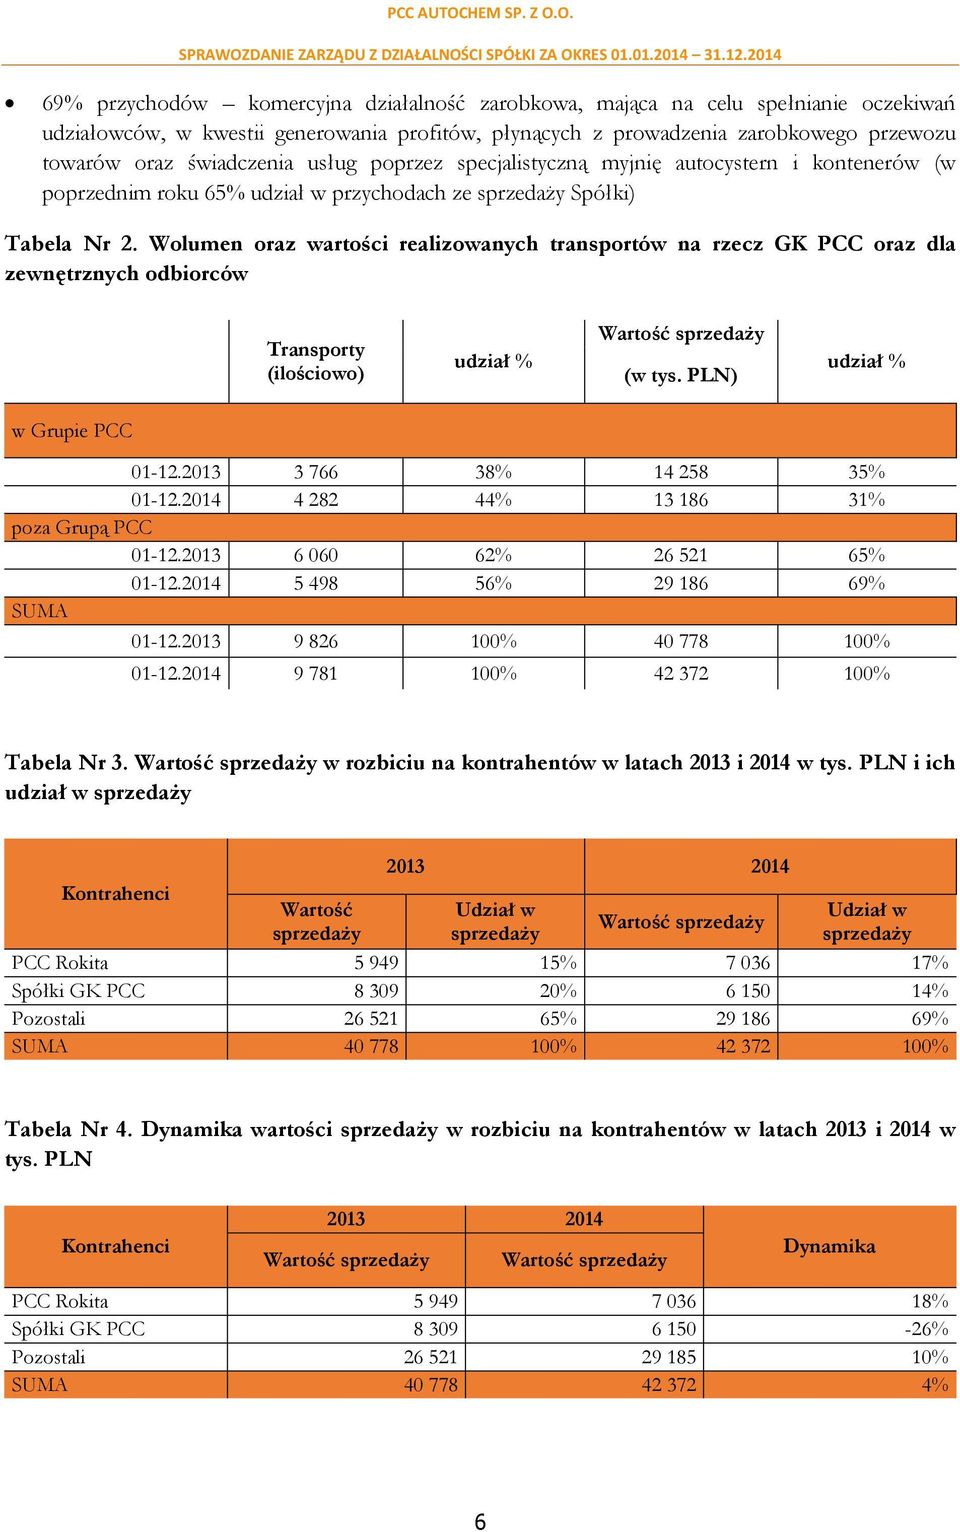 Wolumen oraz wartości realizowanych transportów na rzecz GK PCC oraz dla zewnętrznych odbiorców Transporty (ilościowo) udział % Wartość sprzedaży (w tys. PLN) udział % w Grupie PCC 01-12.